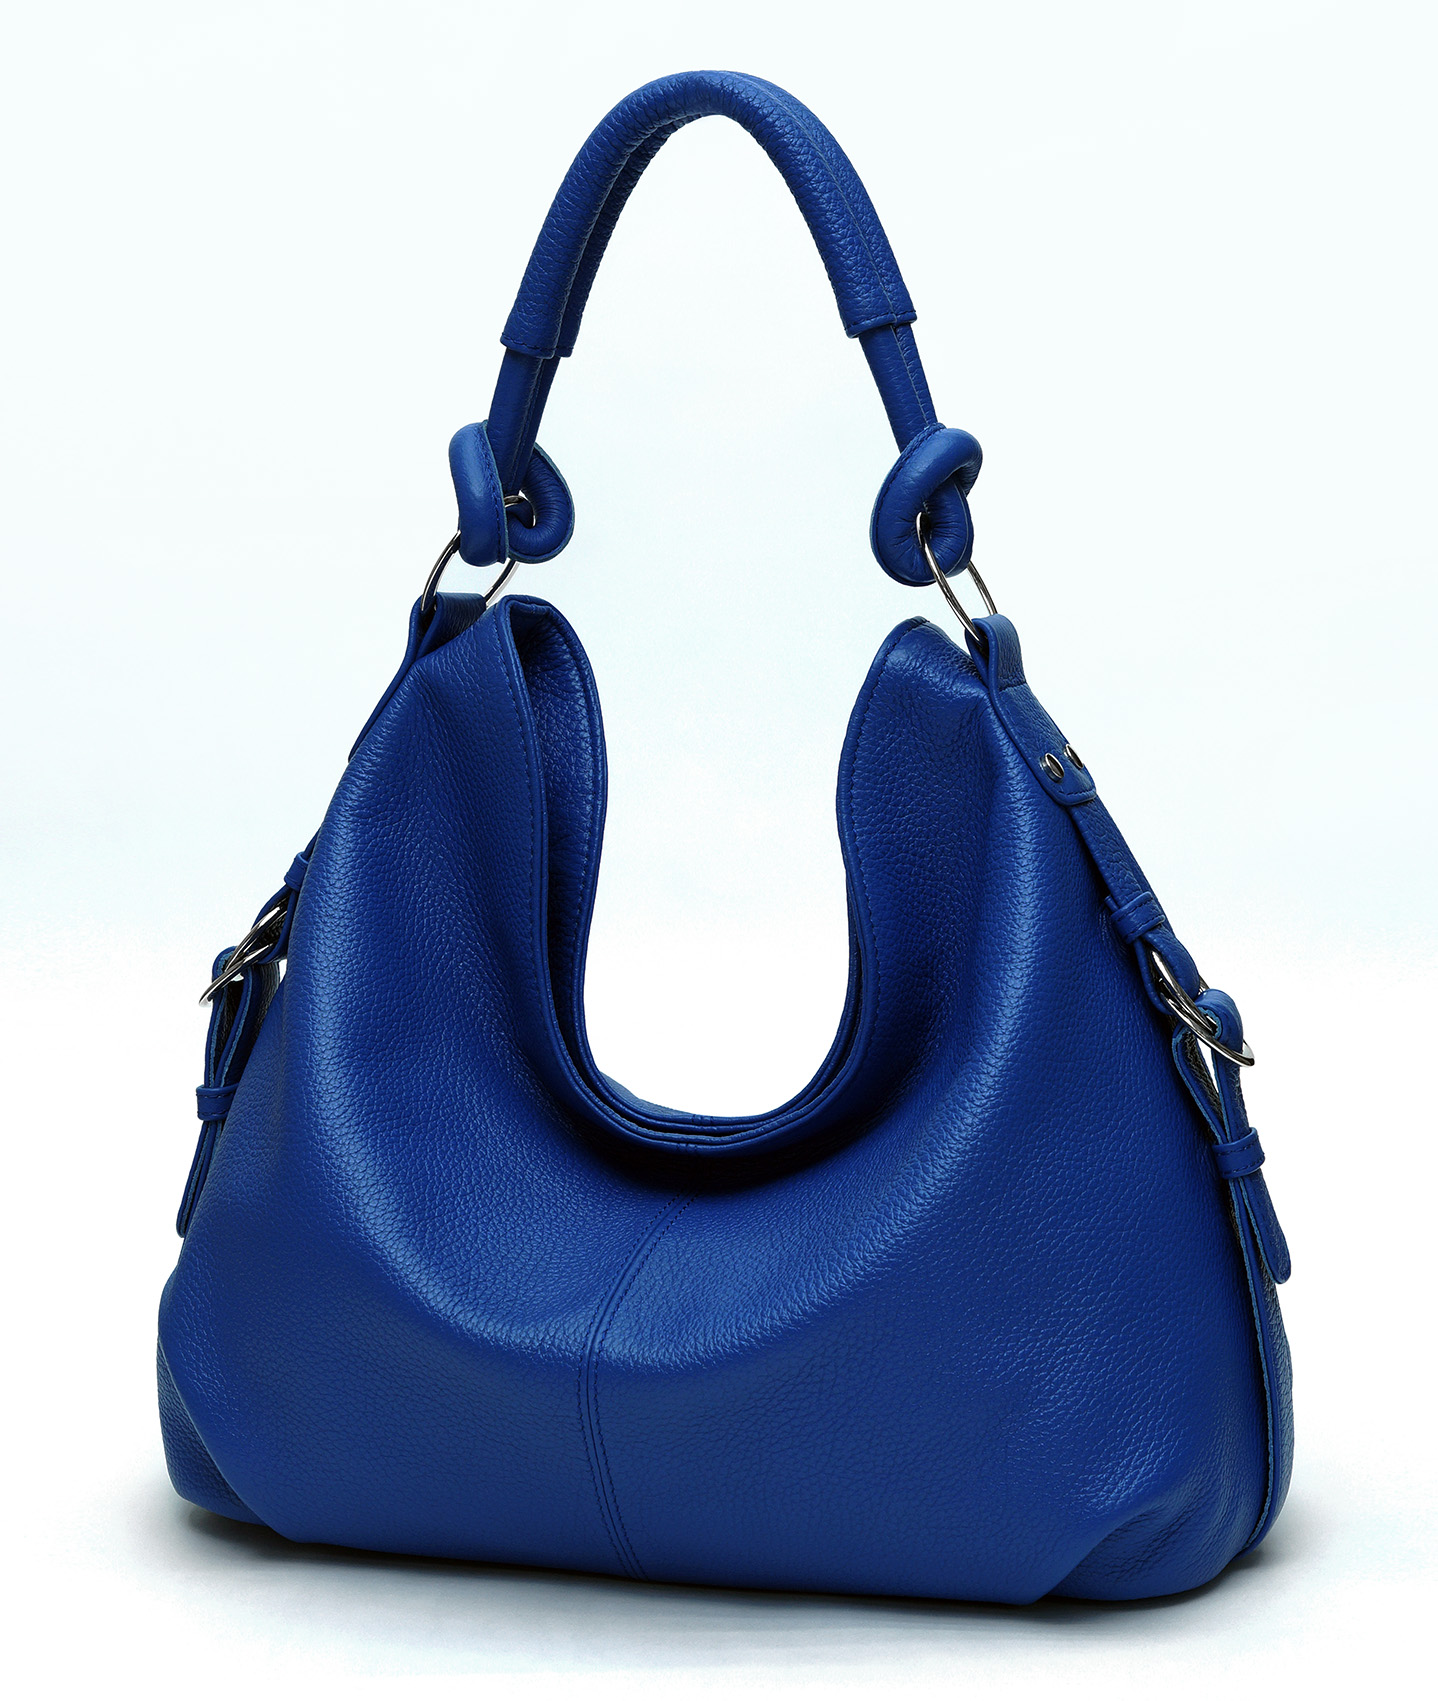 Купить голубую сумку женскую. Женская кожаная сумка 1821 Blue. Сумка Gaetano Riva женская синяя. Синяя кожаная сумка. Женская кожаная сумка синяя.